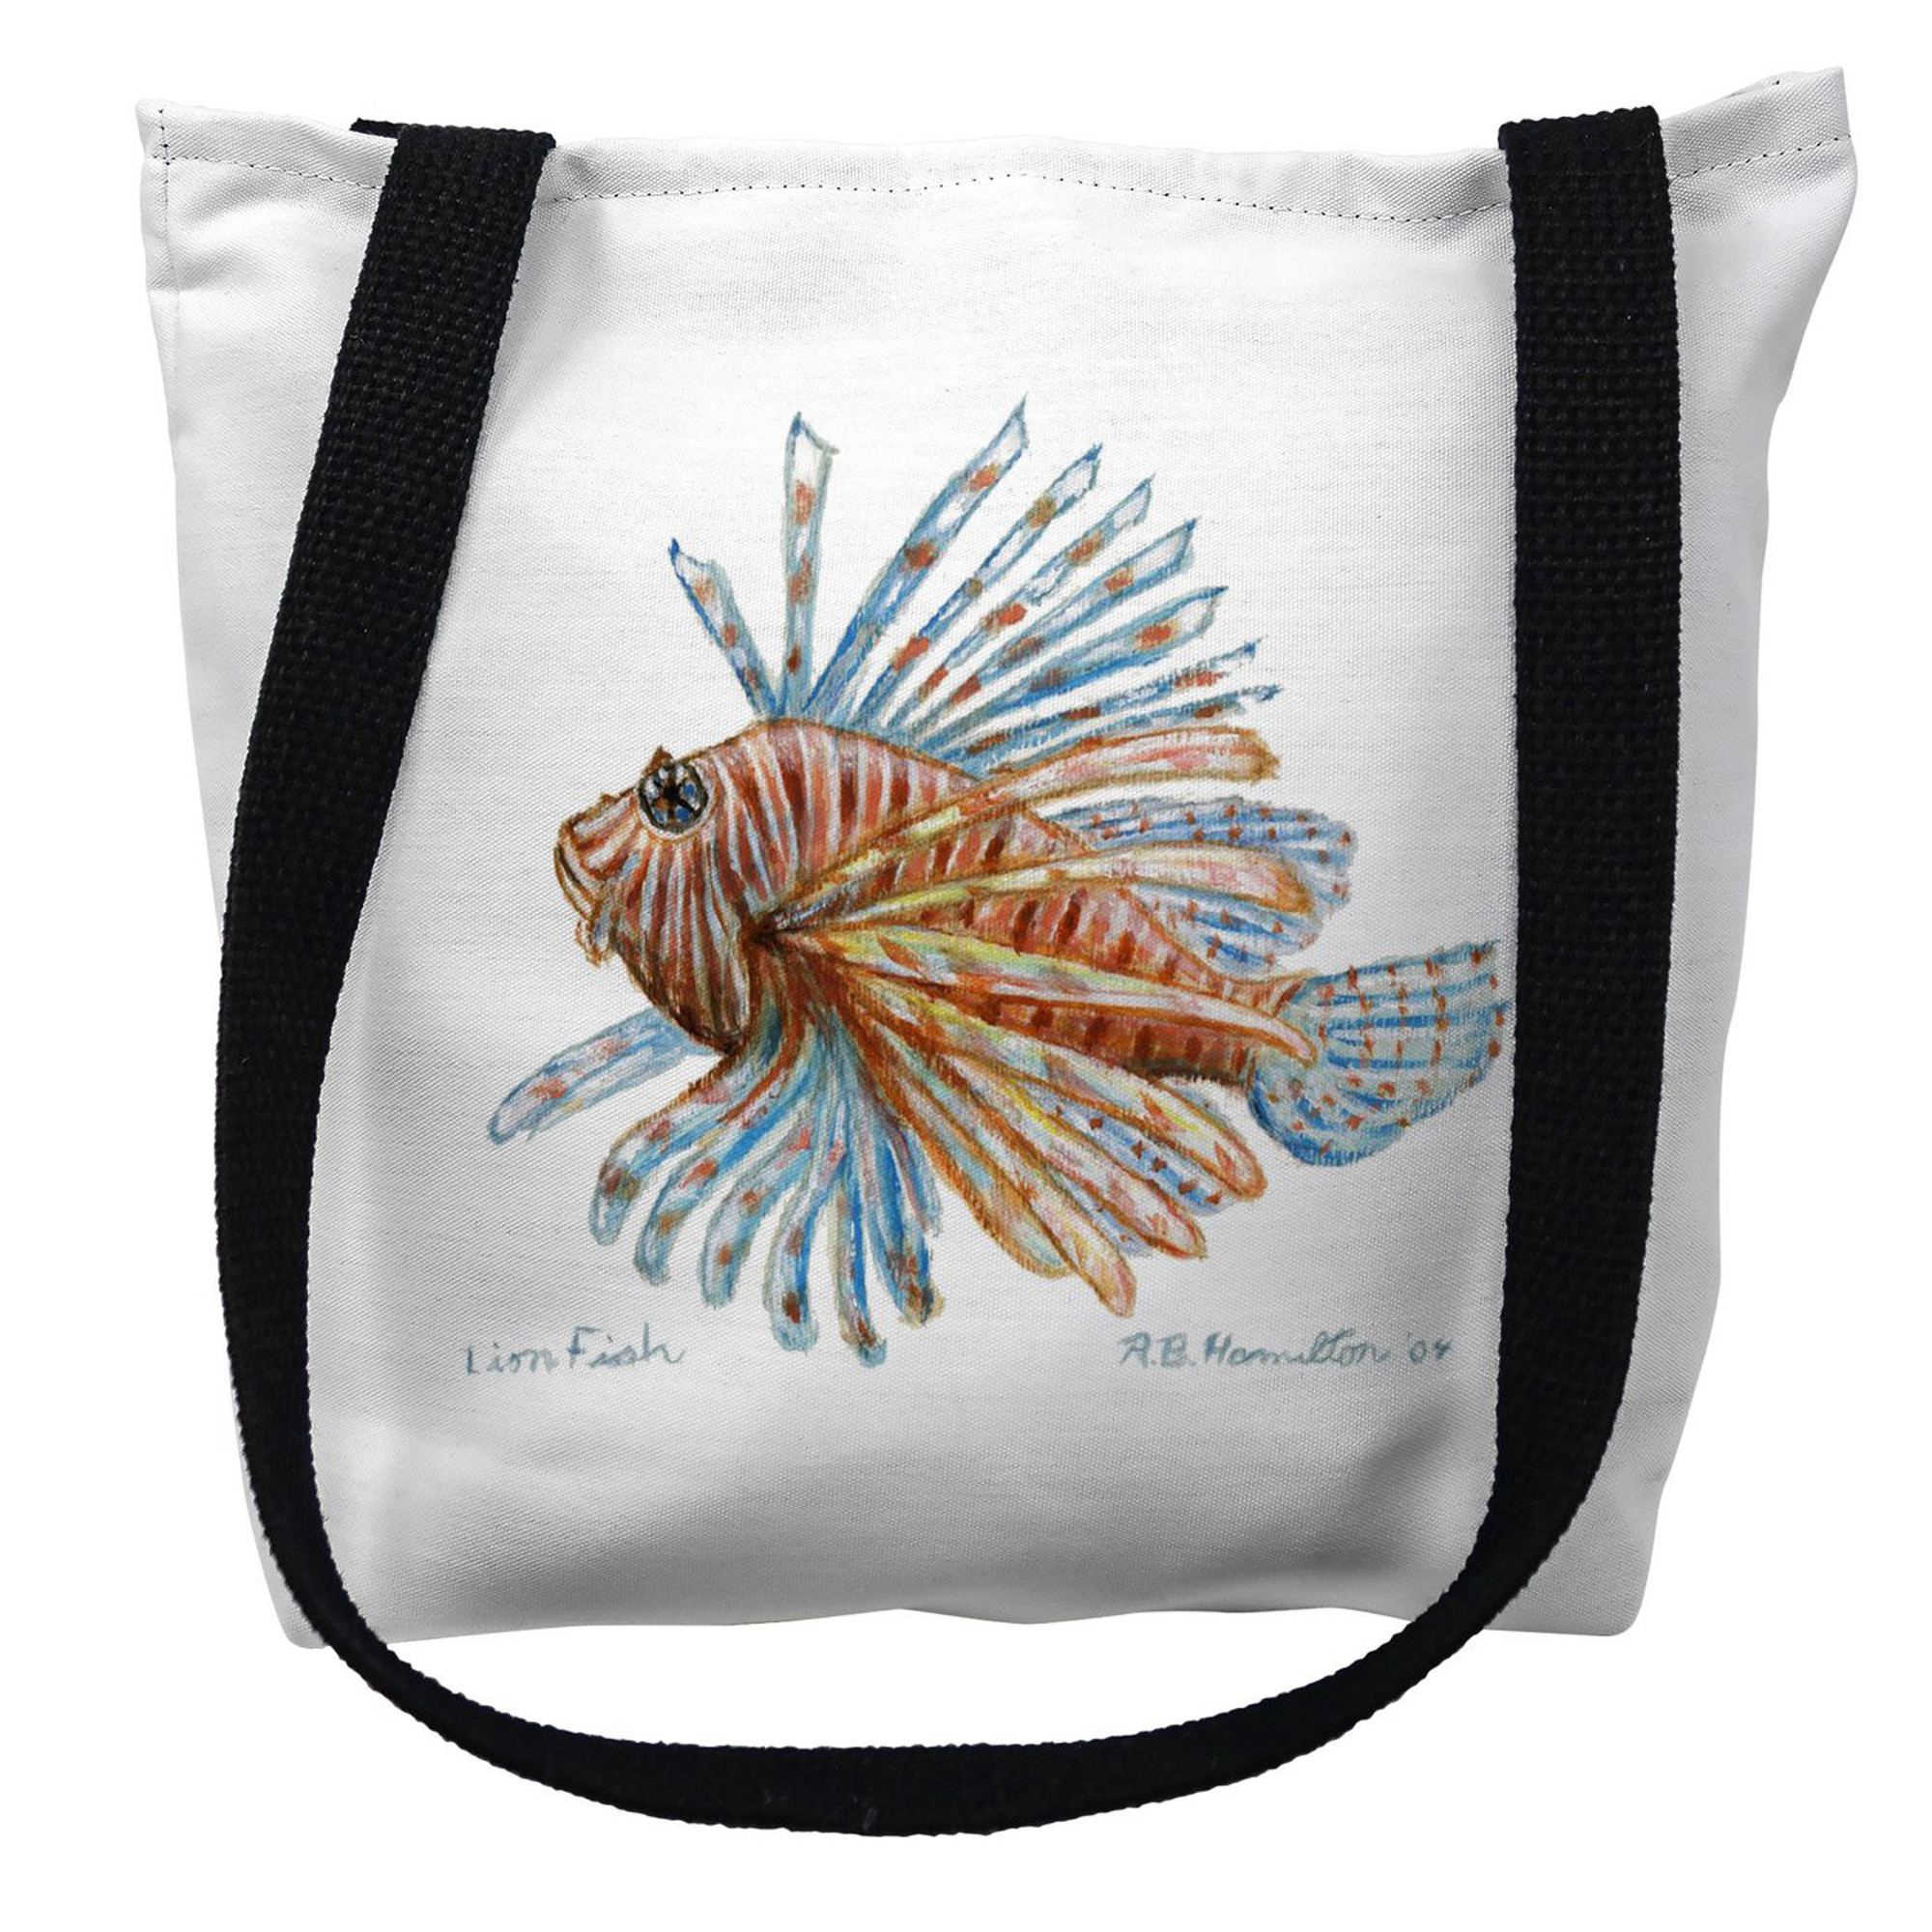 B Drake TY093M 16 x 16 in. Lion Fish Guest Towel Tote Bag - Medium